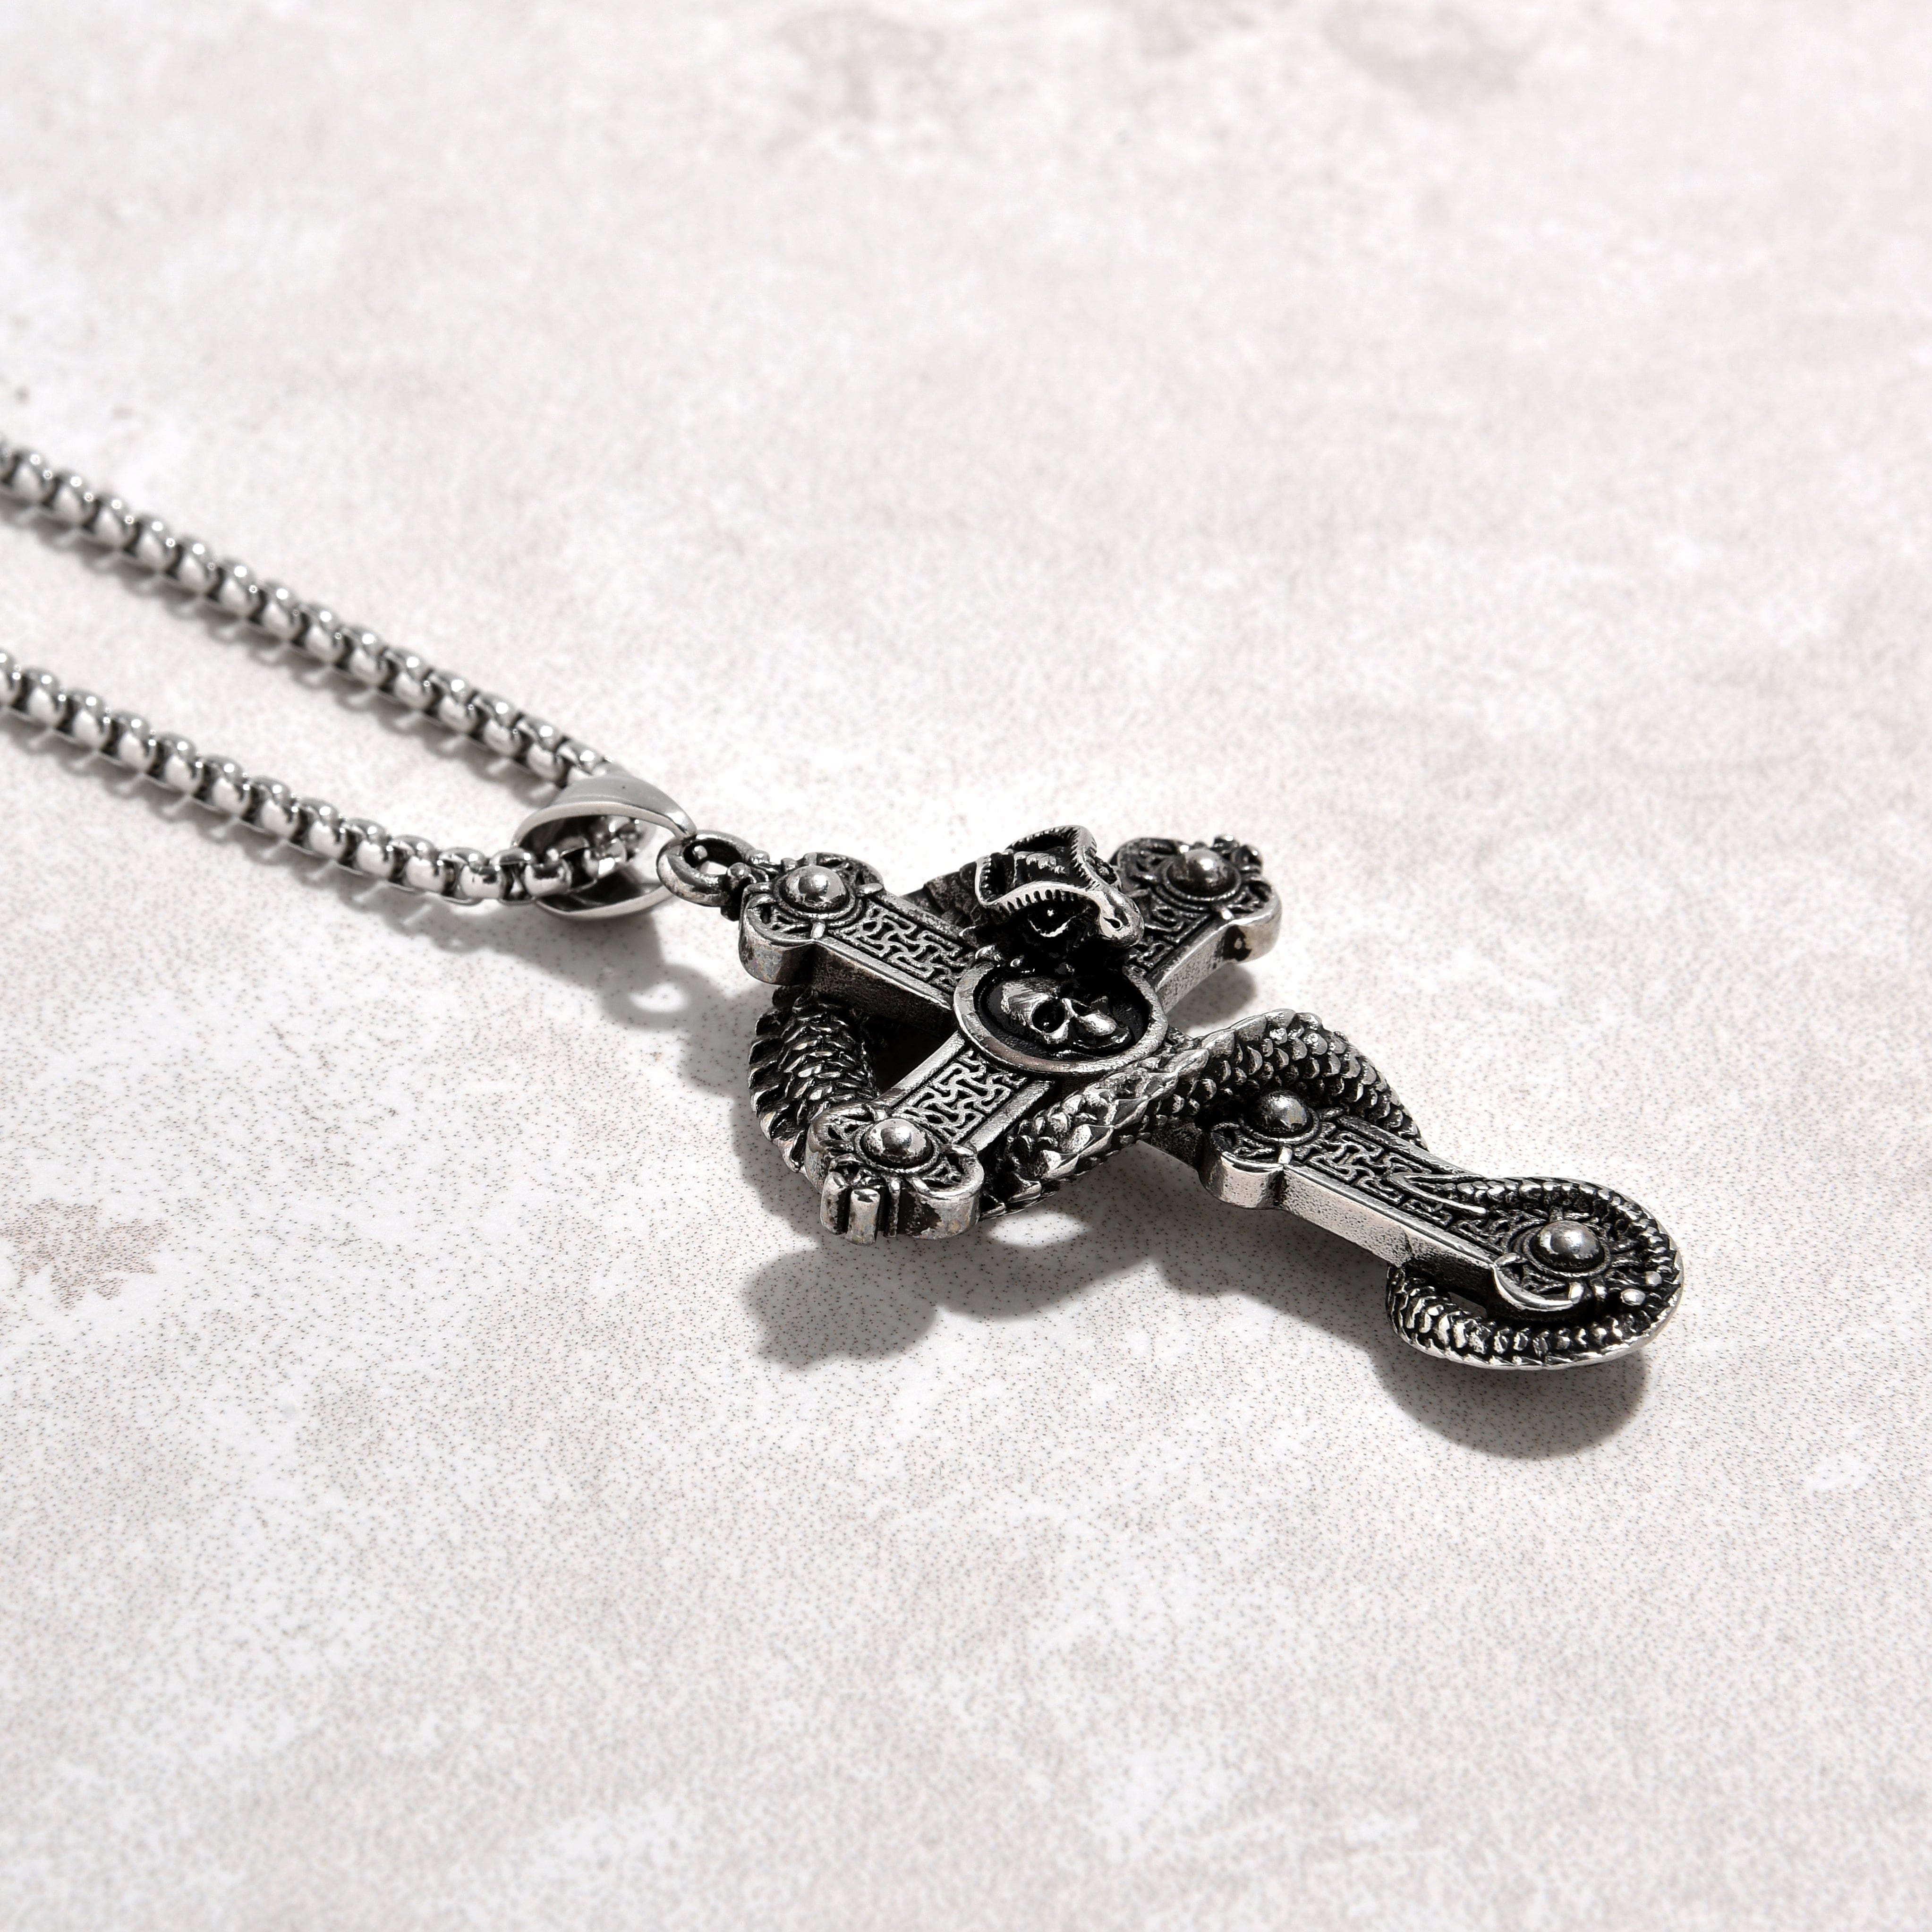 Kalifano Steel Hearts Jewelry Silver Dragon Cross Steel Hearts Necklace SHN515-S